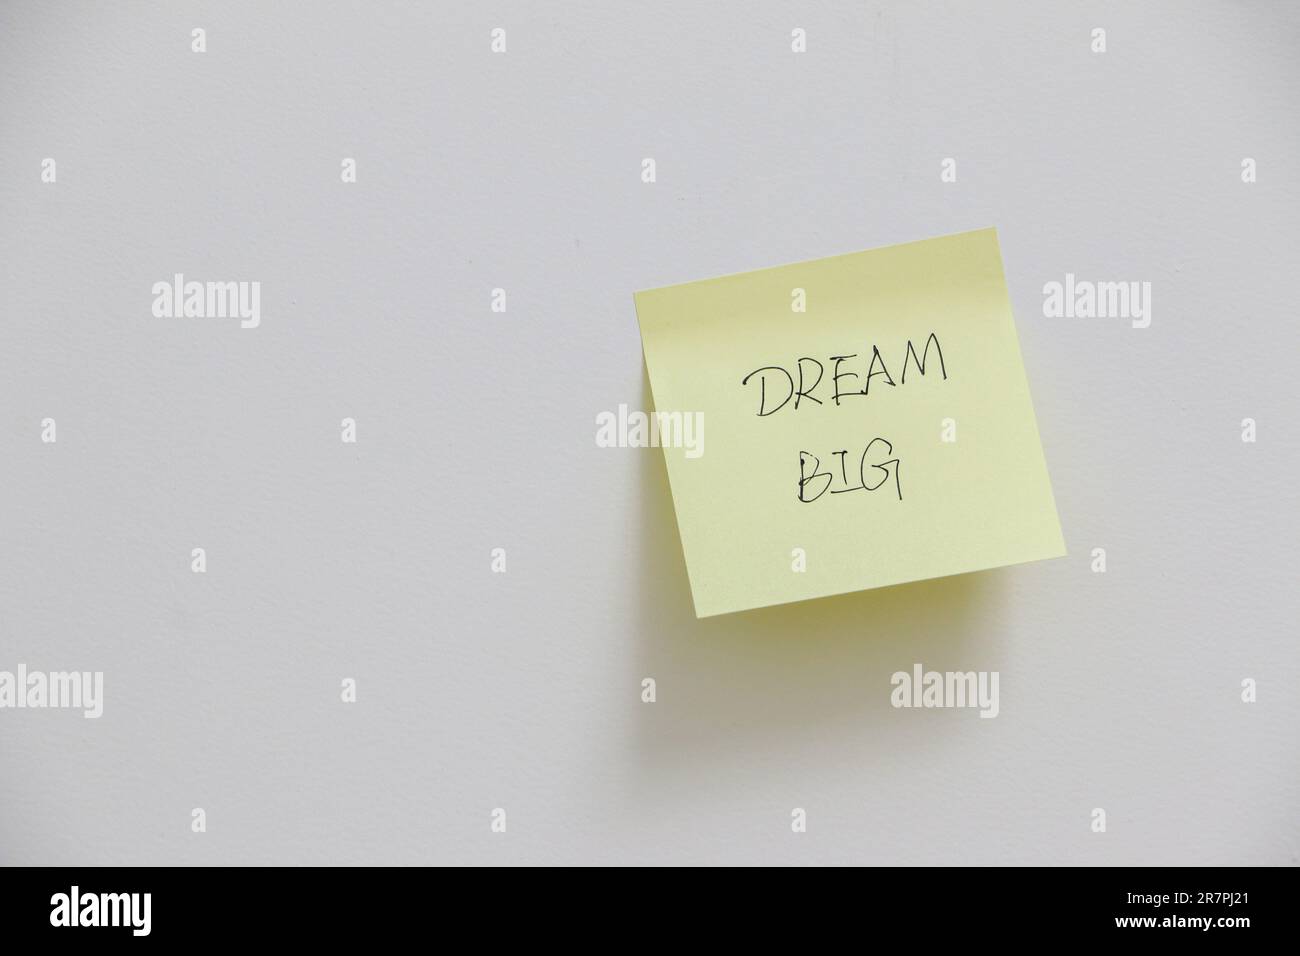 Messaggio motivazionale e stimolante per sognare in grande su note adesive gialle su pareti bianche, concetto di ambizione per il lavoro e la vita Foto Stock